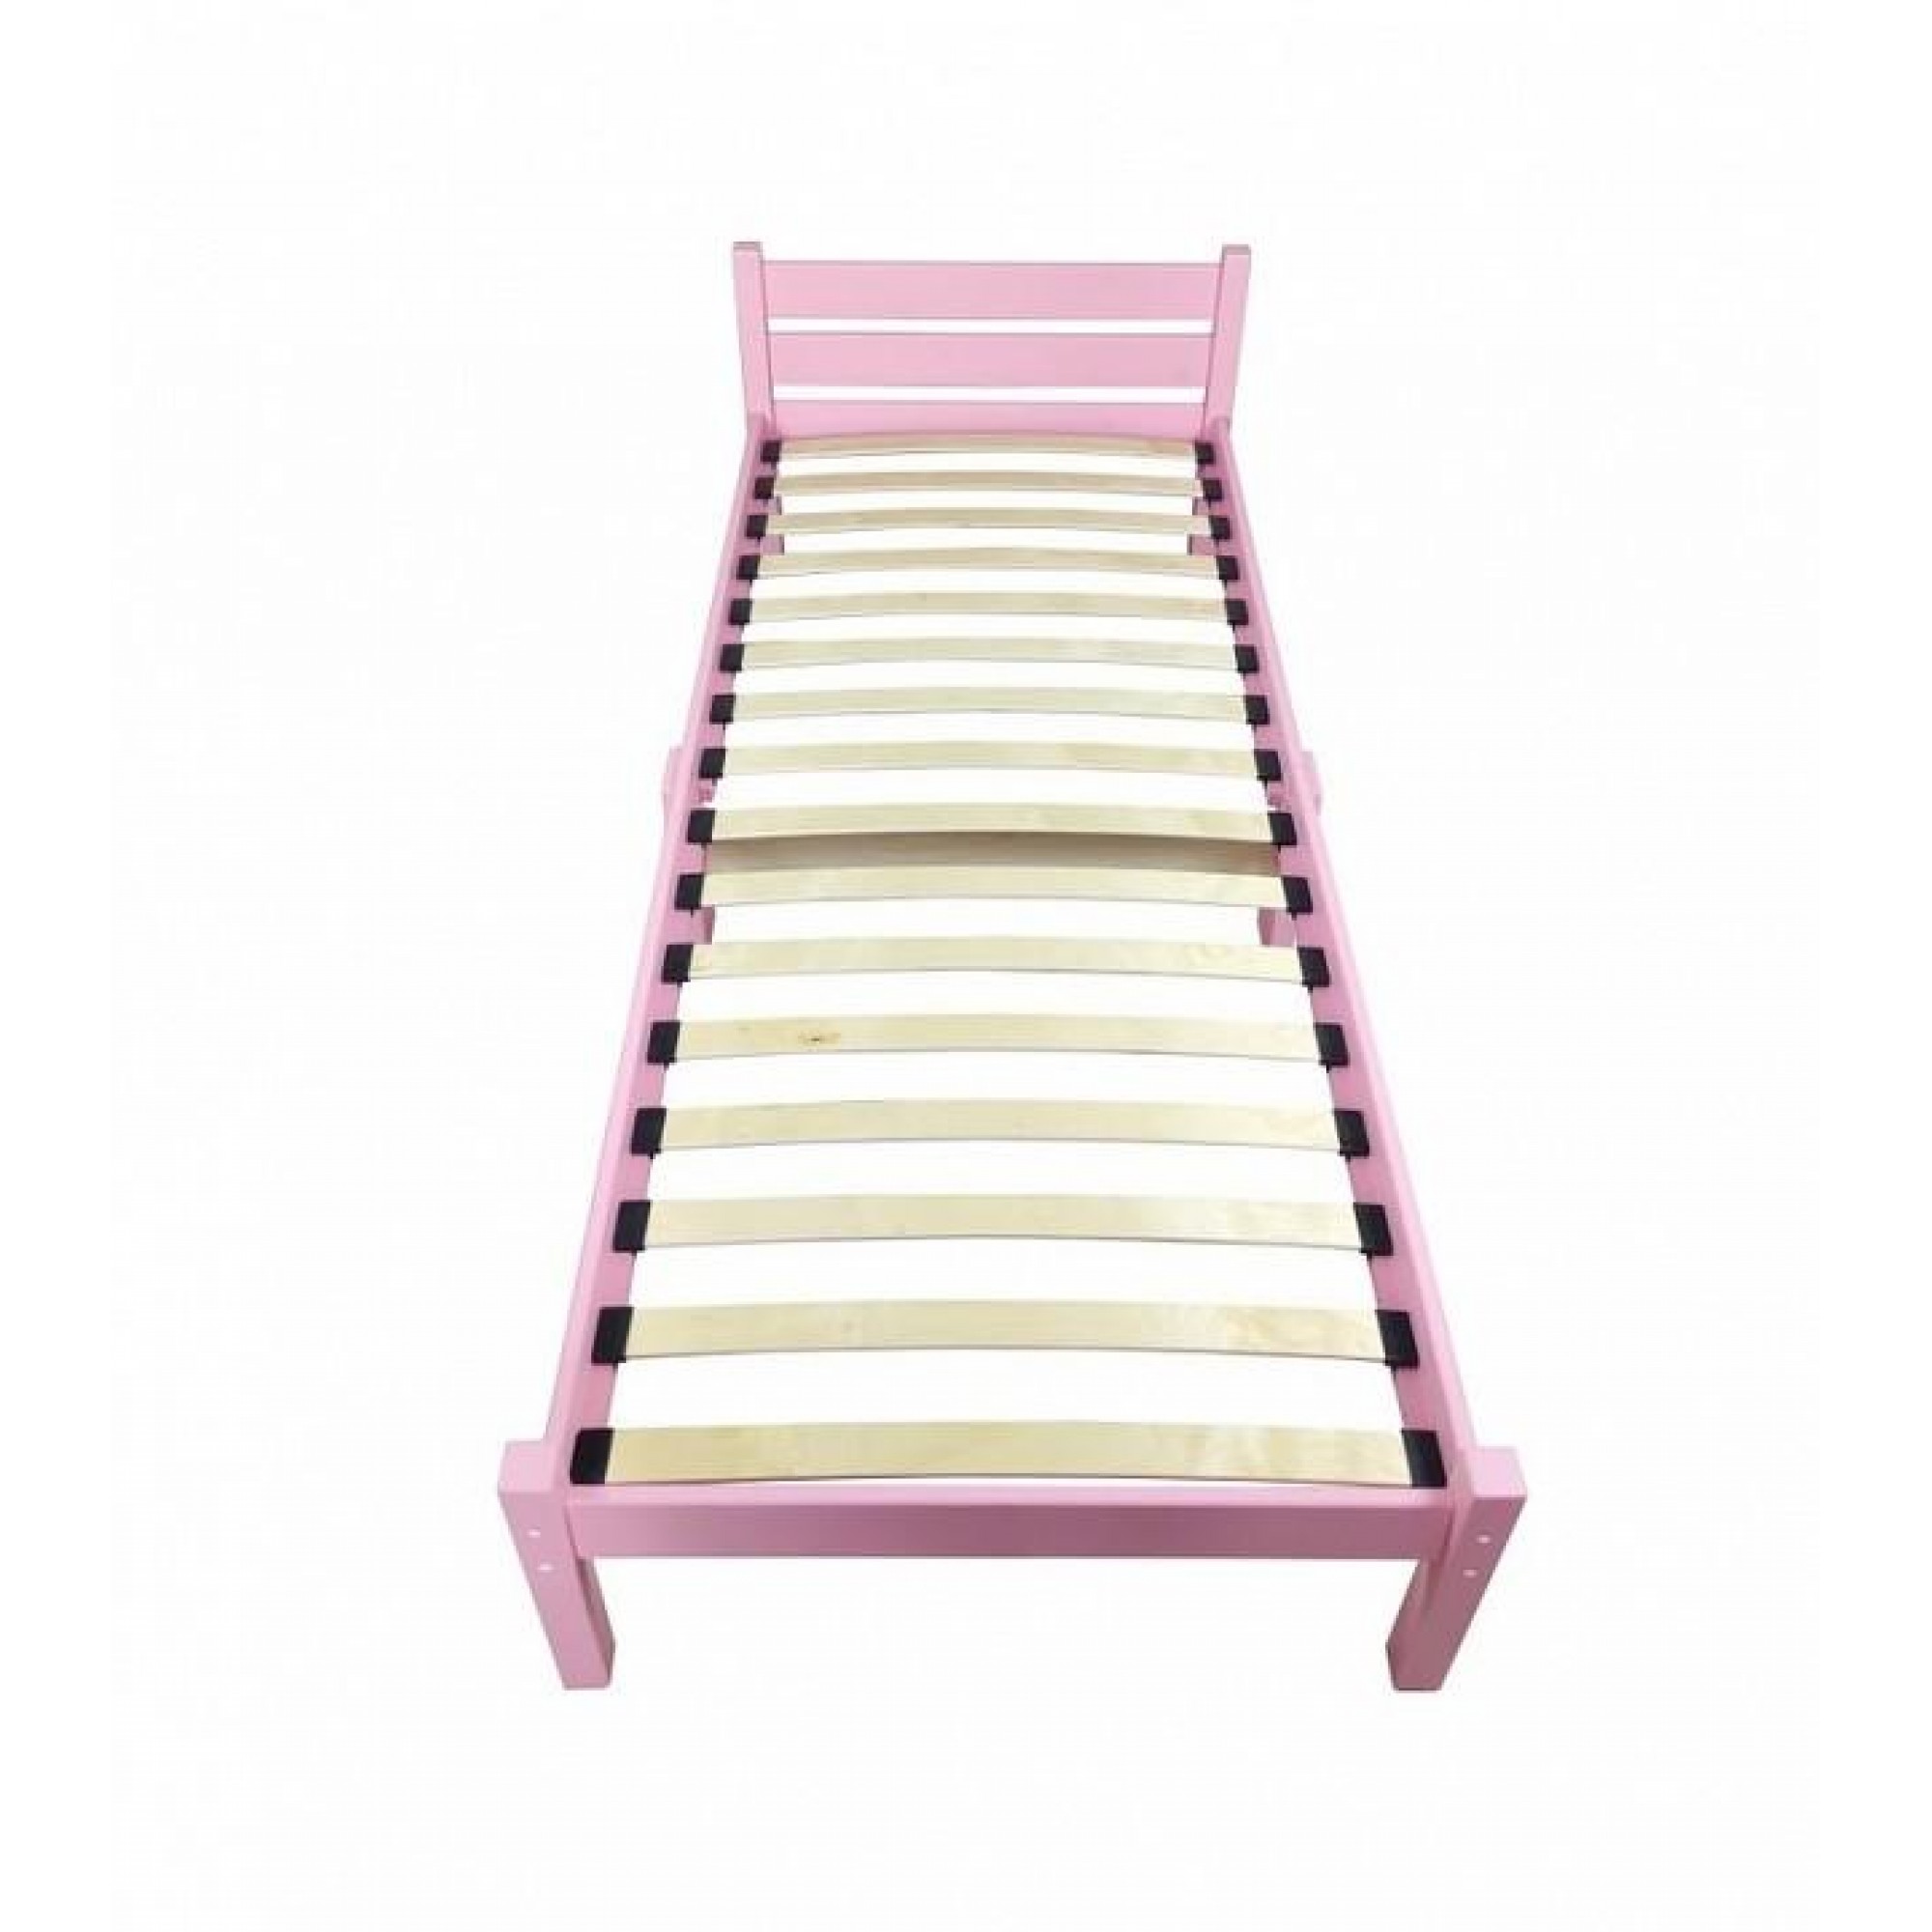 Кровать односпальная Компакт Орто 2000x900 розовый    SLR_ortokompakt90roz